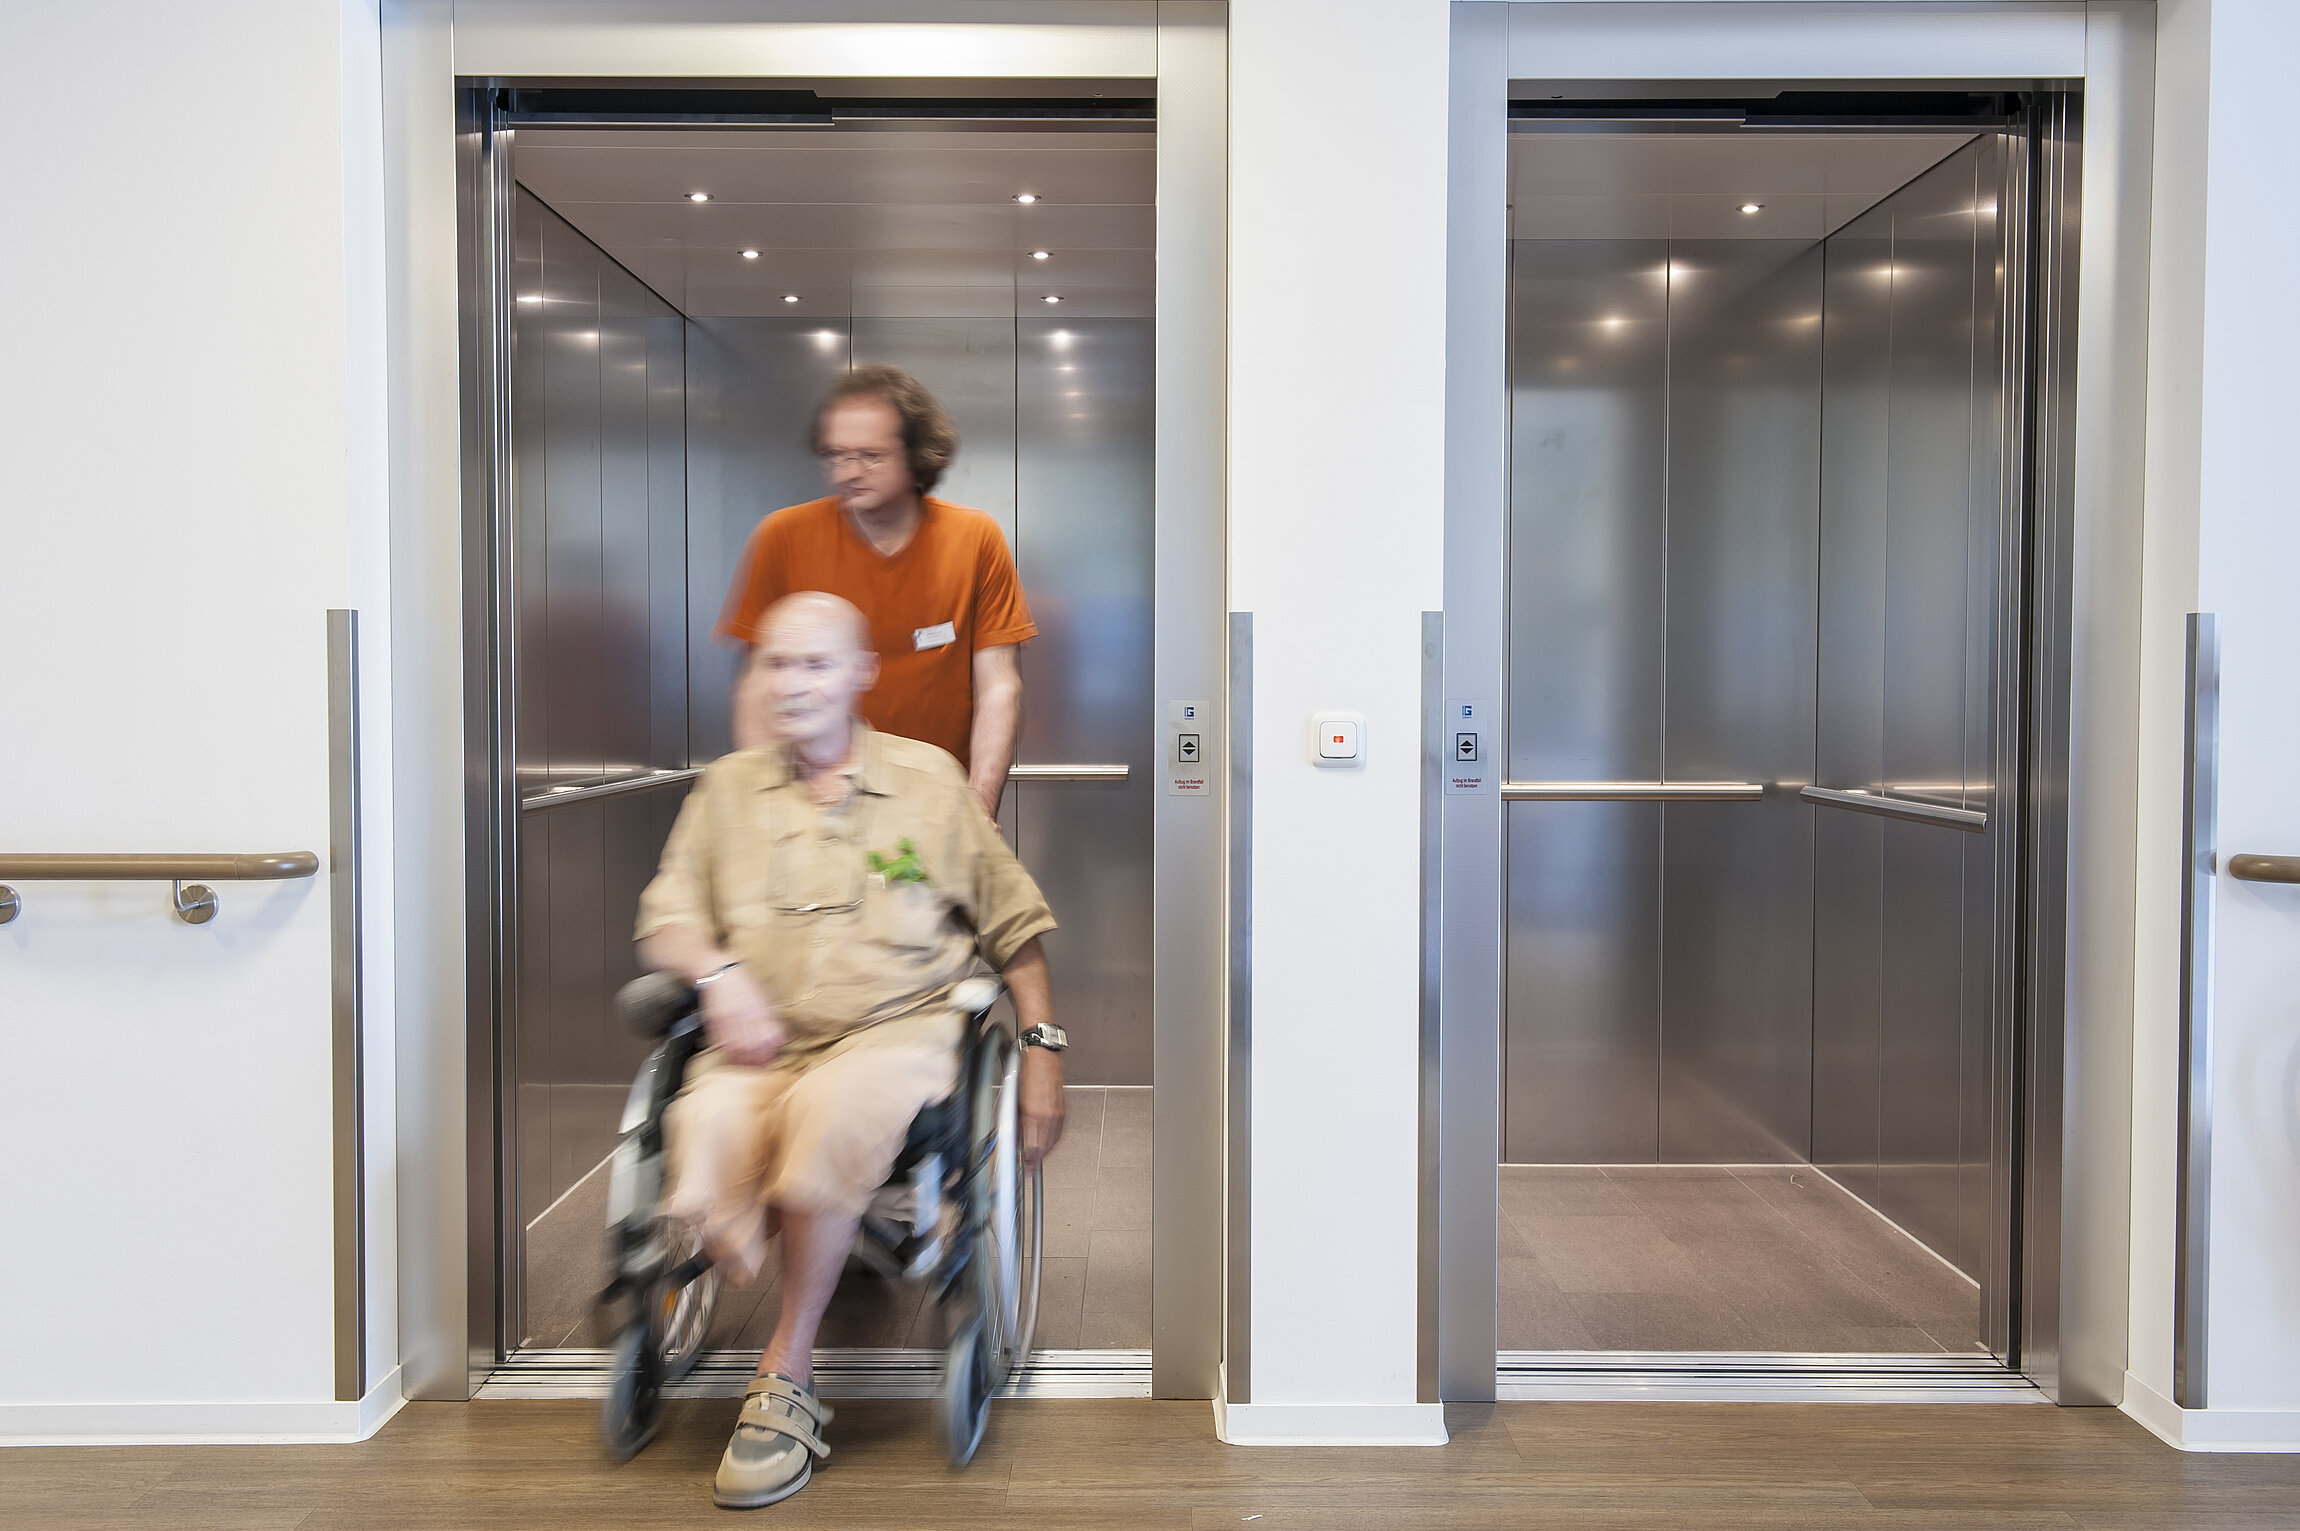 Rollstuhlfahrer wird von Person aus Aufzug geschoben